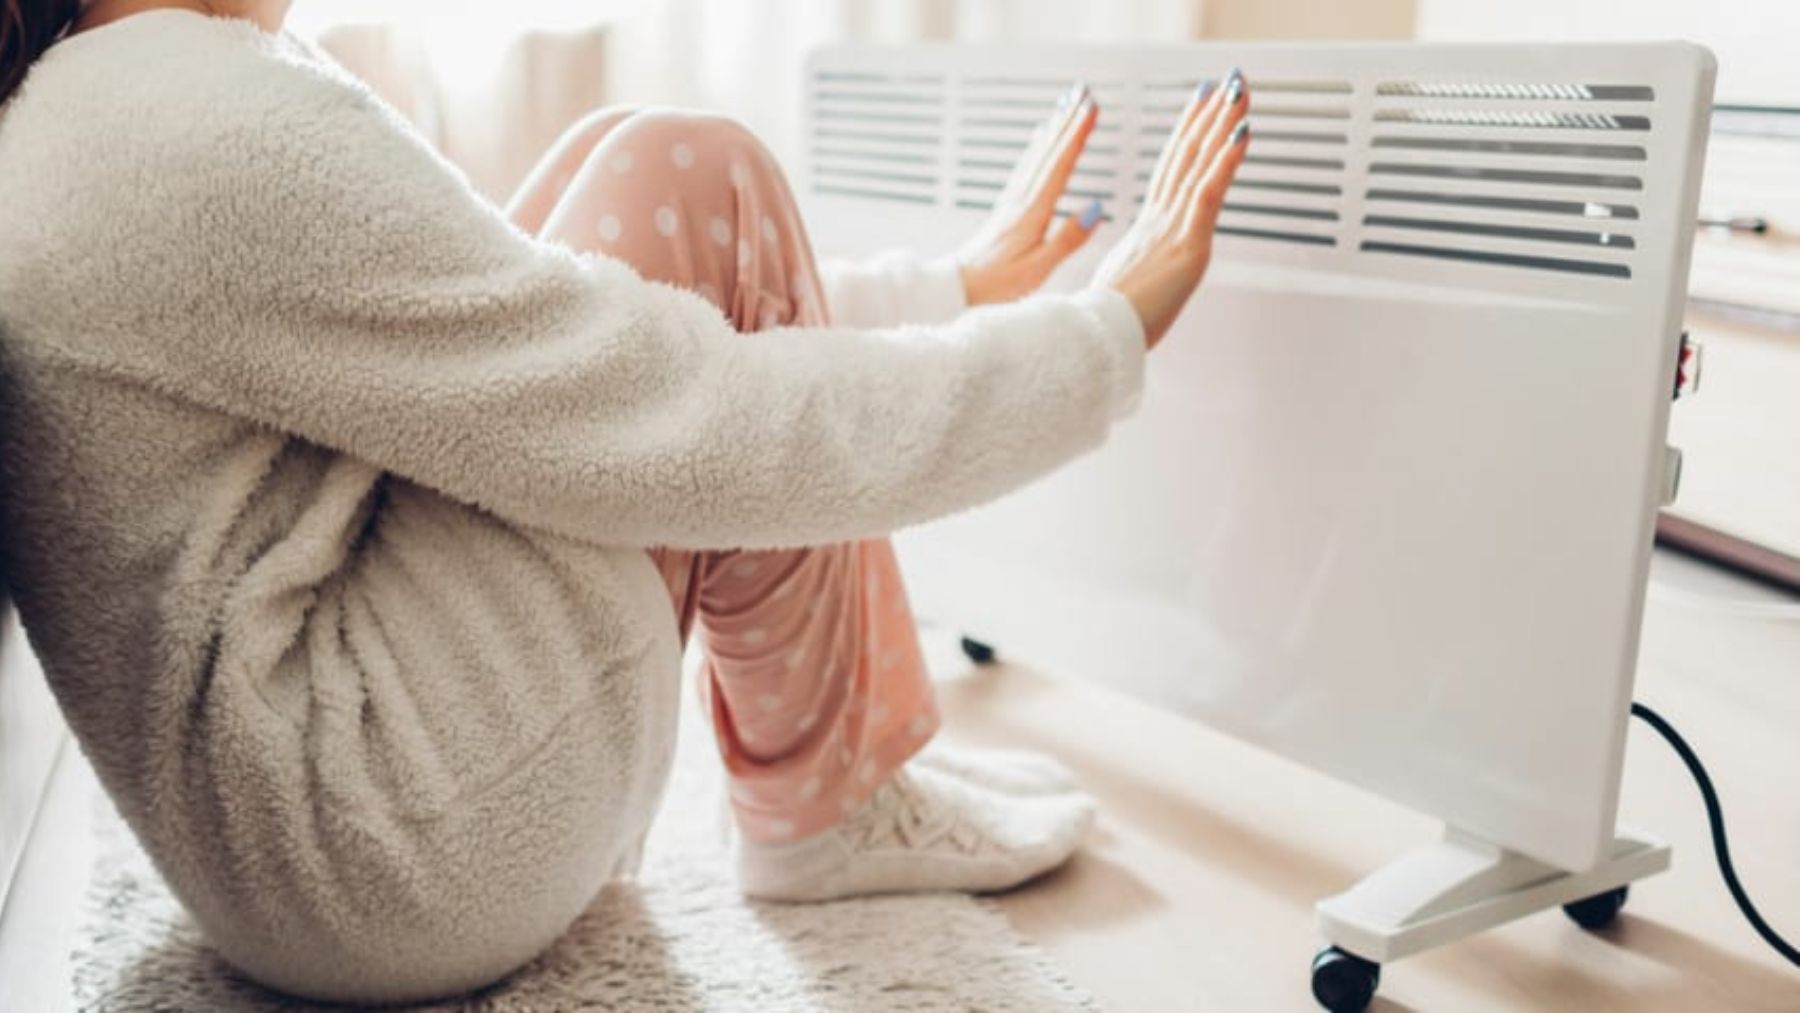 Las causas para el frío en manos y pies y cómo remediar